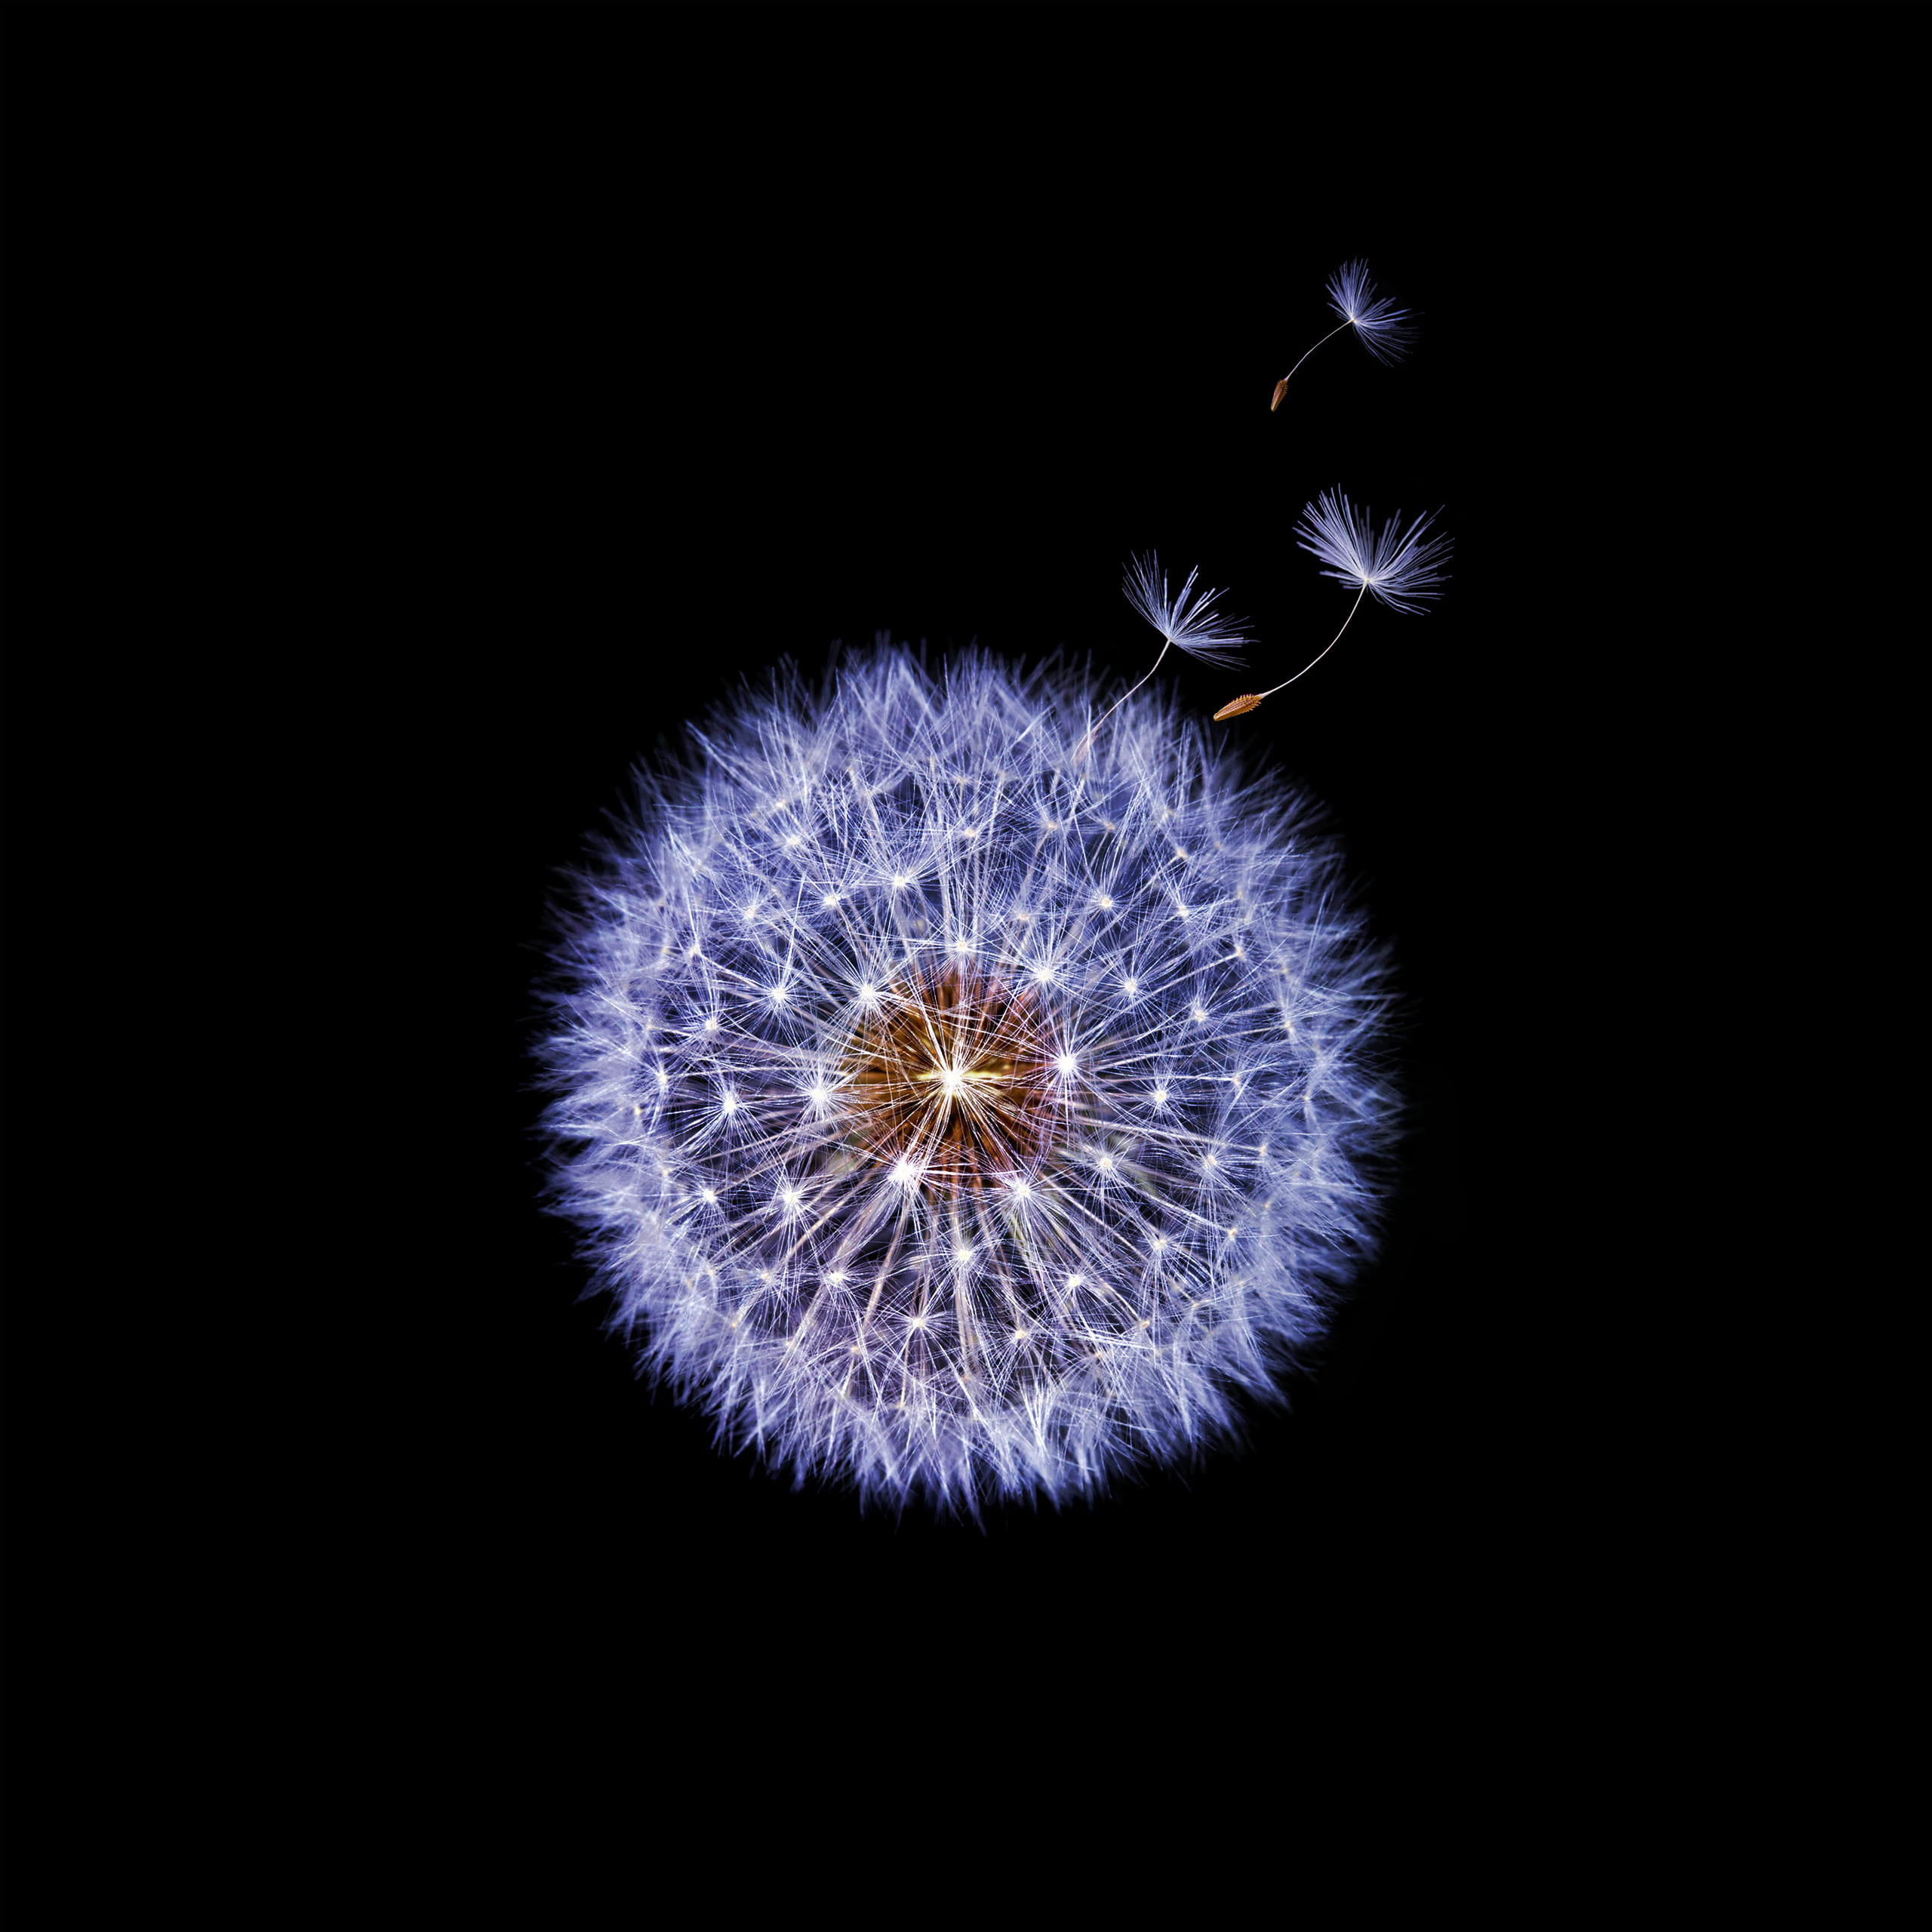 dandelion illustration, Samsung Galaxy S9, Dandelion flower, Dark